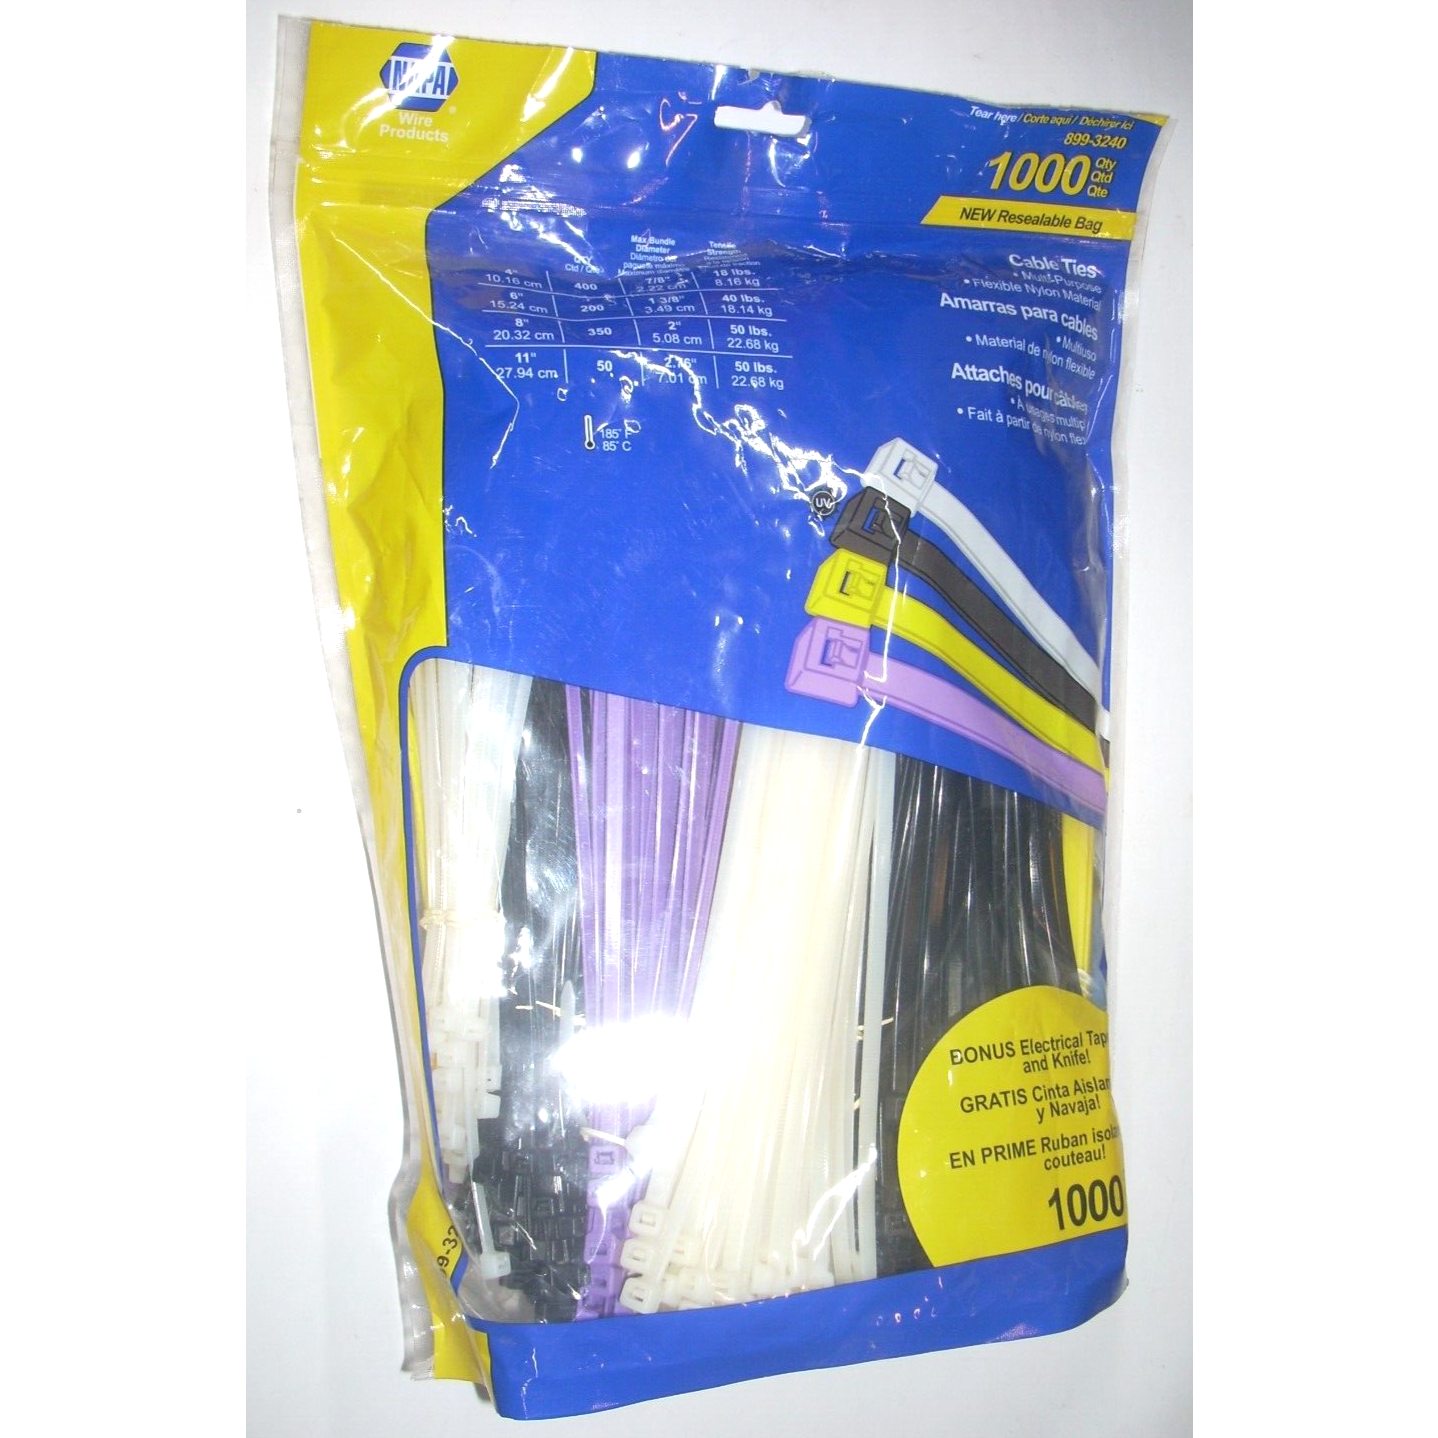 Napa 899-3240 Multicolor Cable Ties (400) 4", (200) 6", (350) 8", (50) 11" 1000p